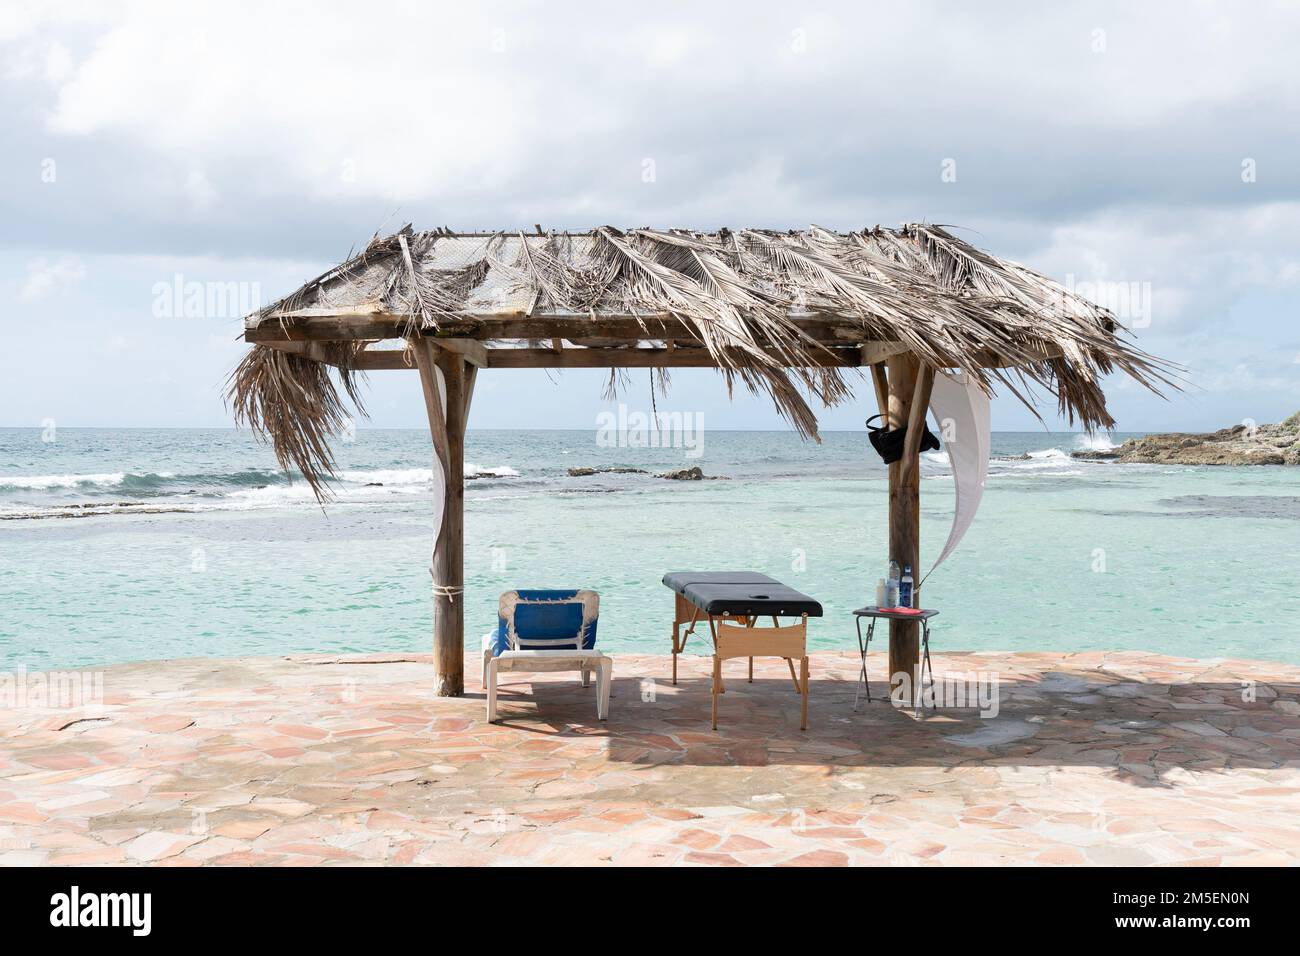 Holzdach mit Palmenblattdach am Strand am Meer. Stuhl und Massage schlecht zum Entspannen Stockfoto